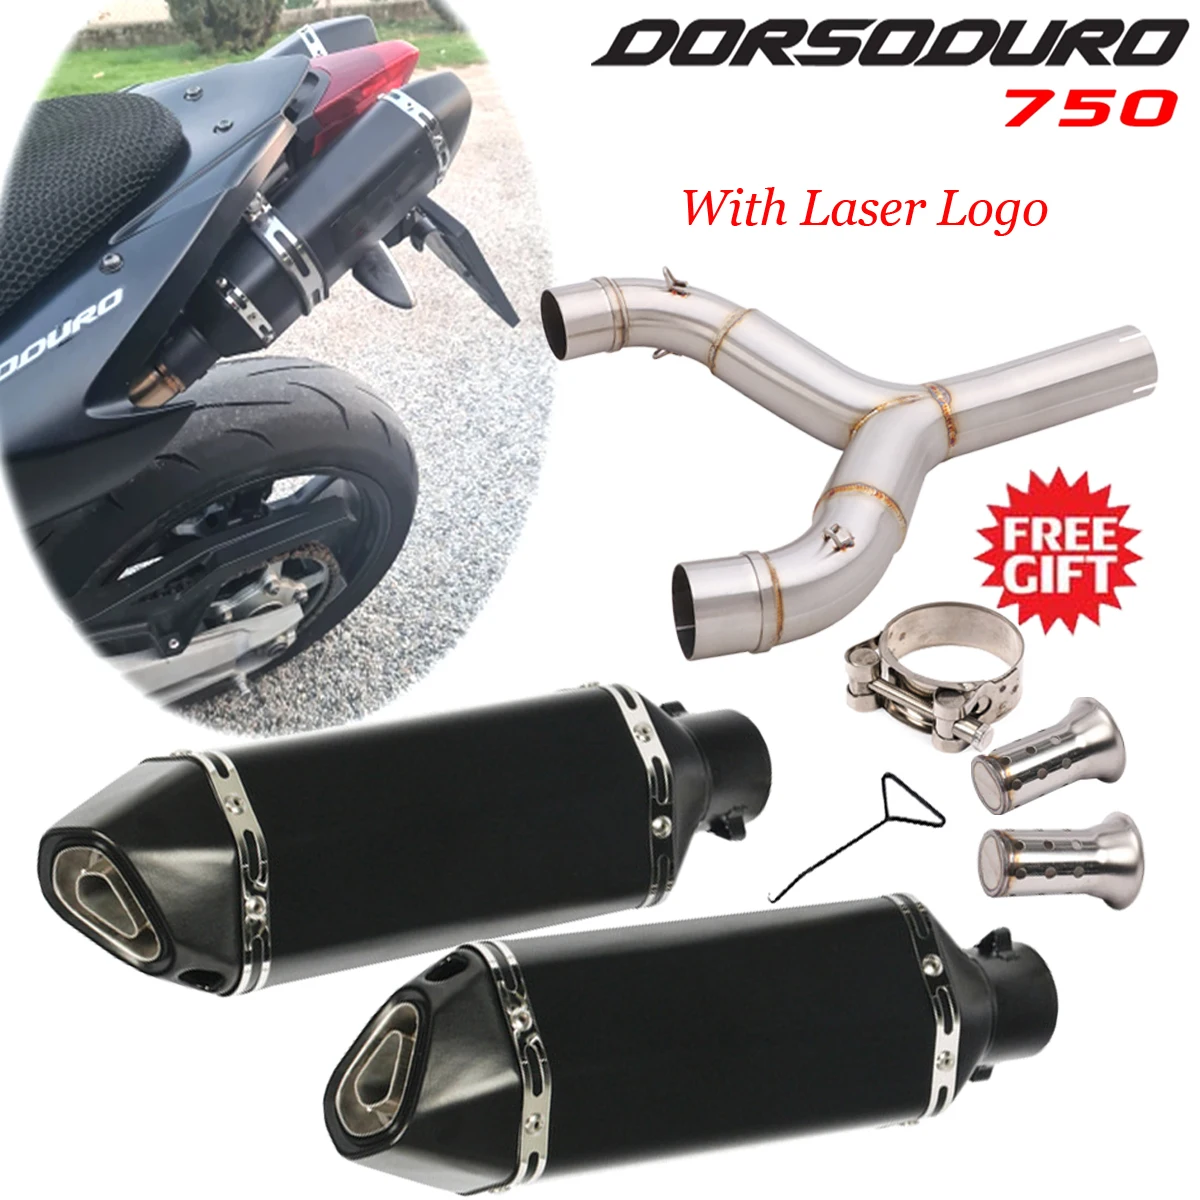 

Motorcycle Exhaust Mid LInk Pipe With Muffler For Aprilia Dorsoduro 750 2008-2016 SMV750 SMV 750 Dorsoduro DD750 Escape Moto